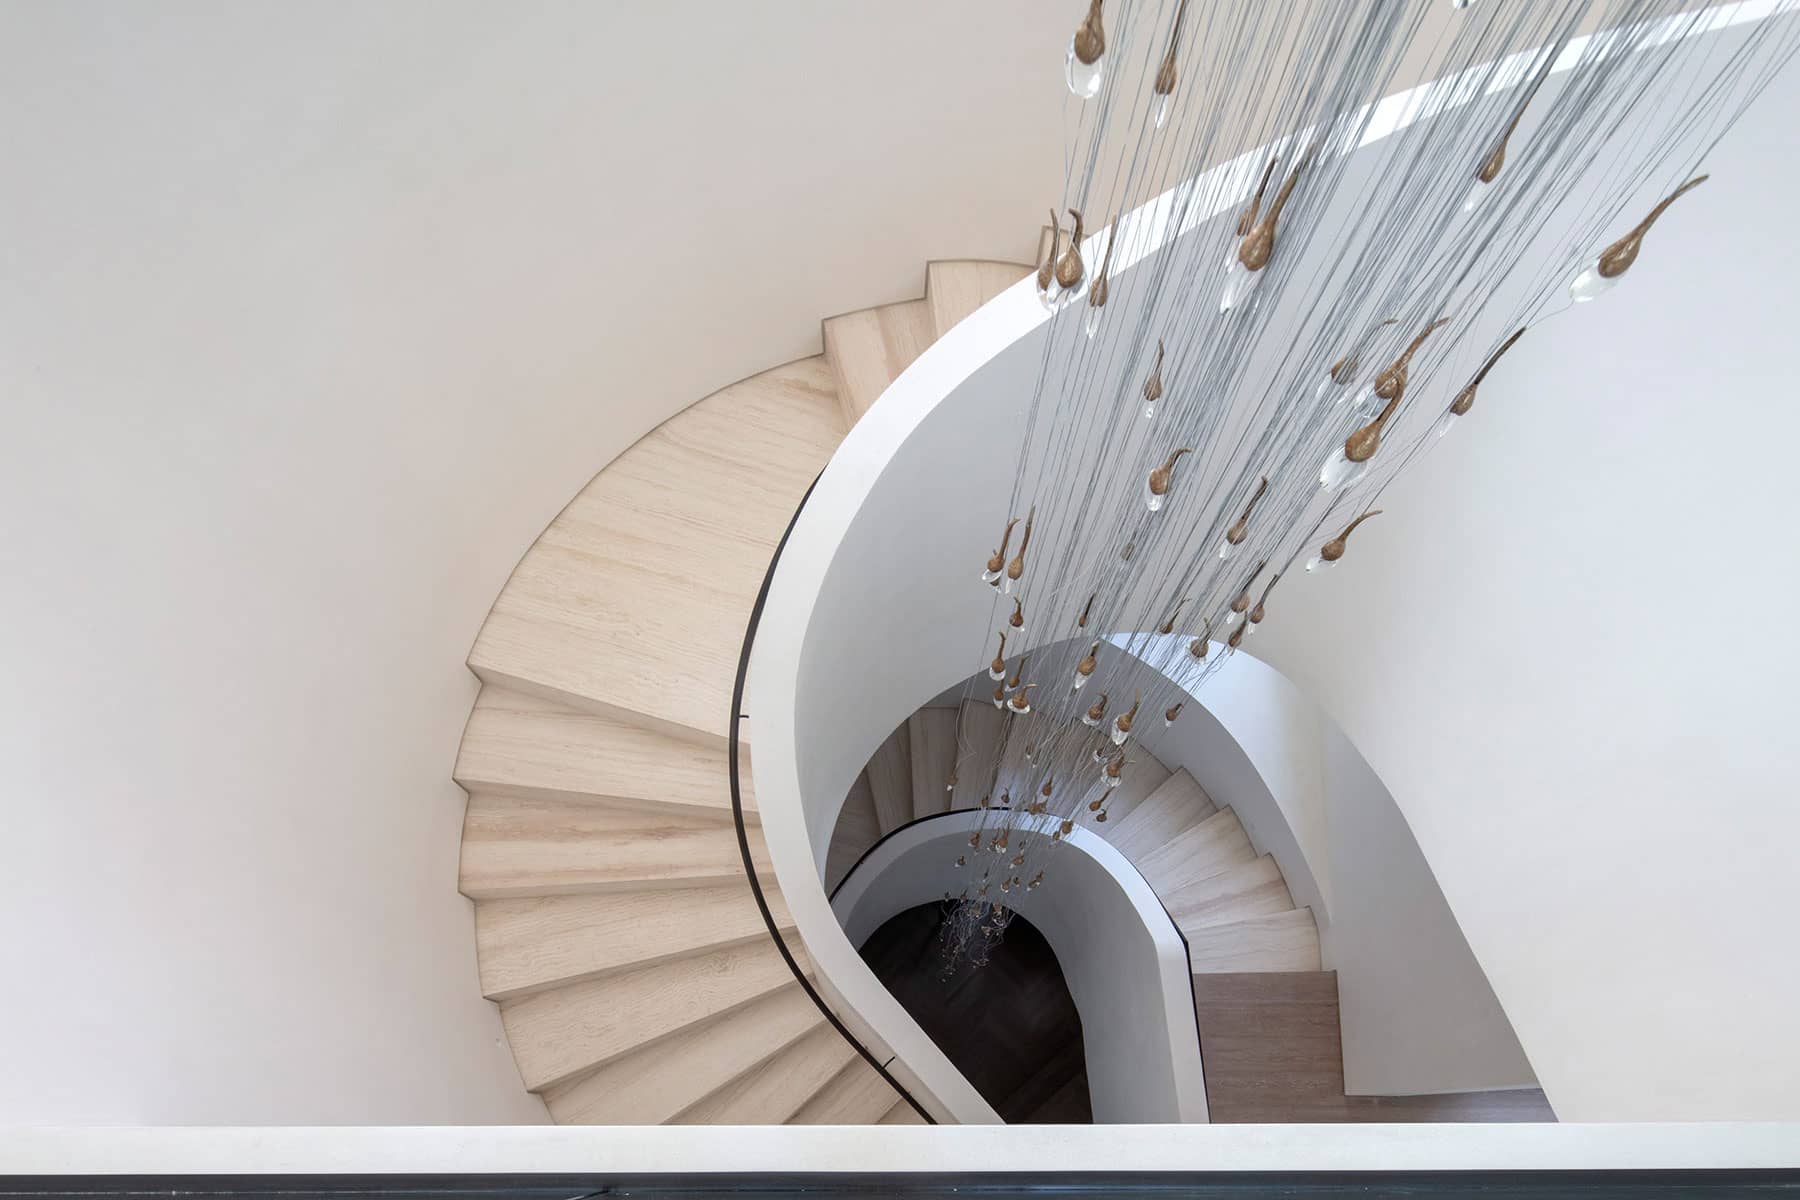 Architecture Photography Dubai: Spiral Staircase at Private Villa, Dubai The Palm.